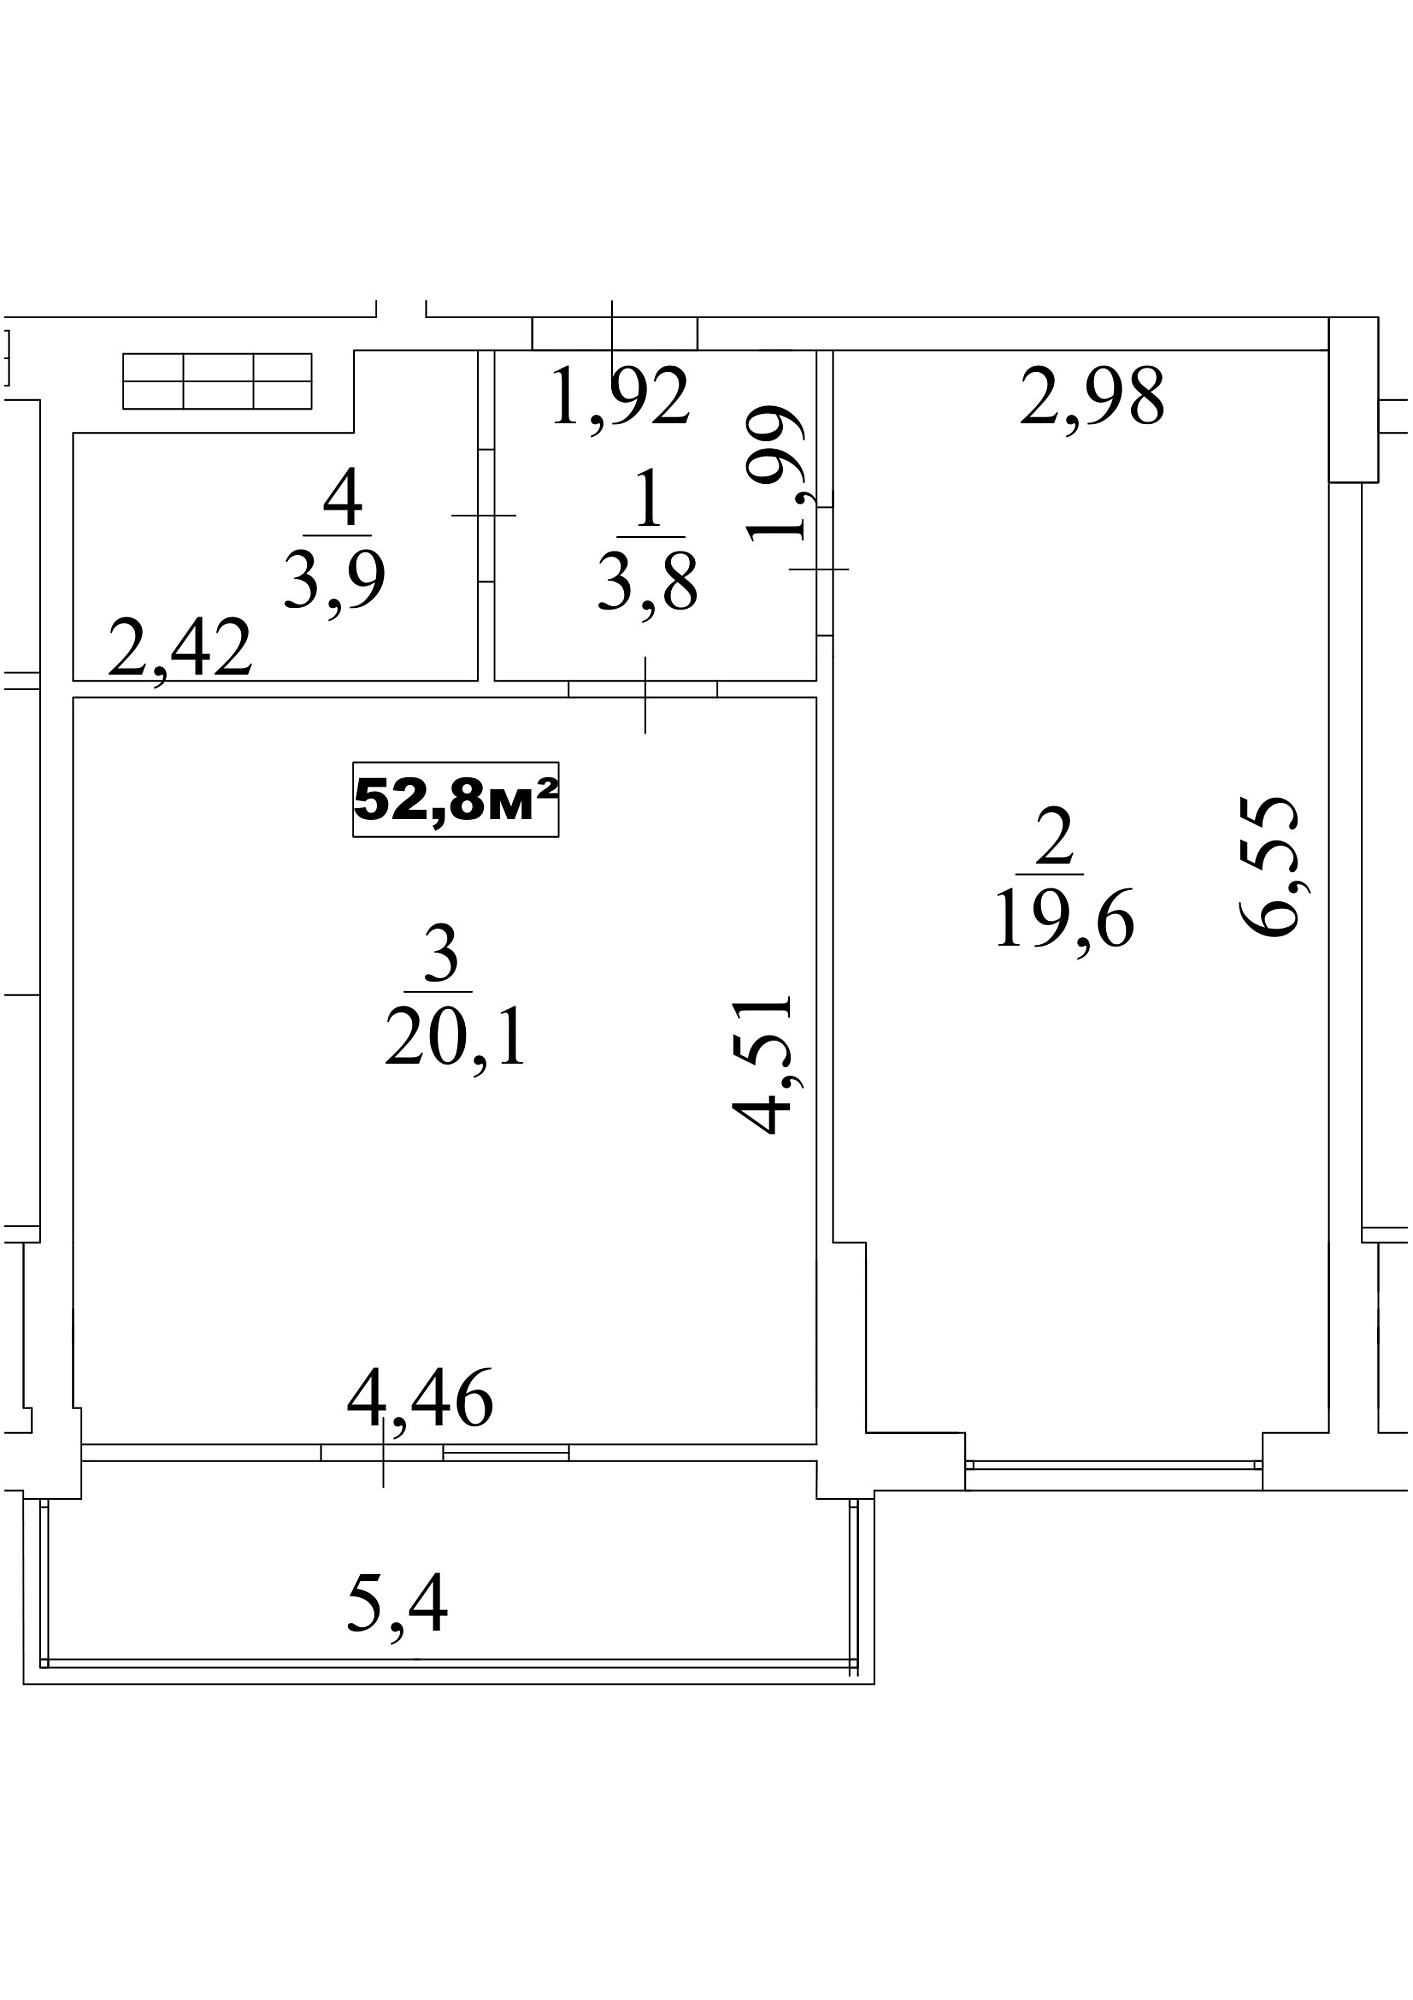 Планування 1-к квартира площею 52.8м2, AB-10-07/00062.